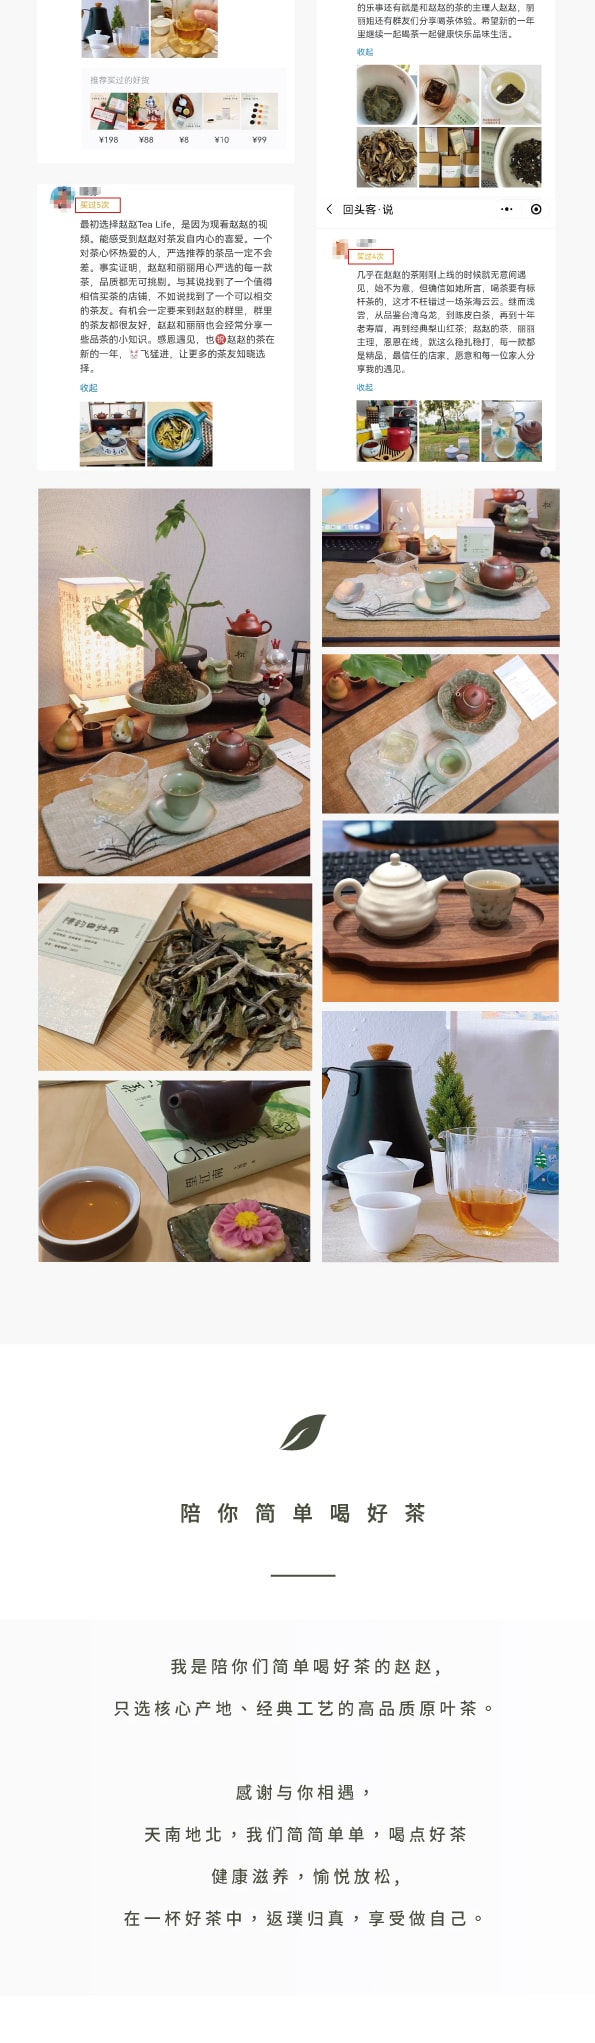 ZhaoTea 茉莉白毫 經典福州茉莉花茶 茶湯鮮靈滿芬芳 試飲三連泡 茶葉 花茶12g